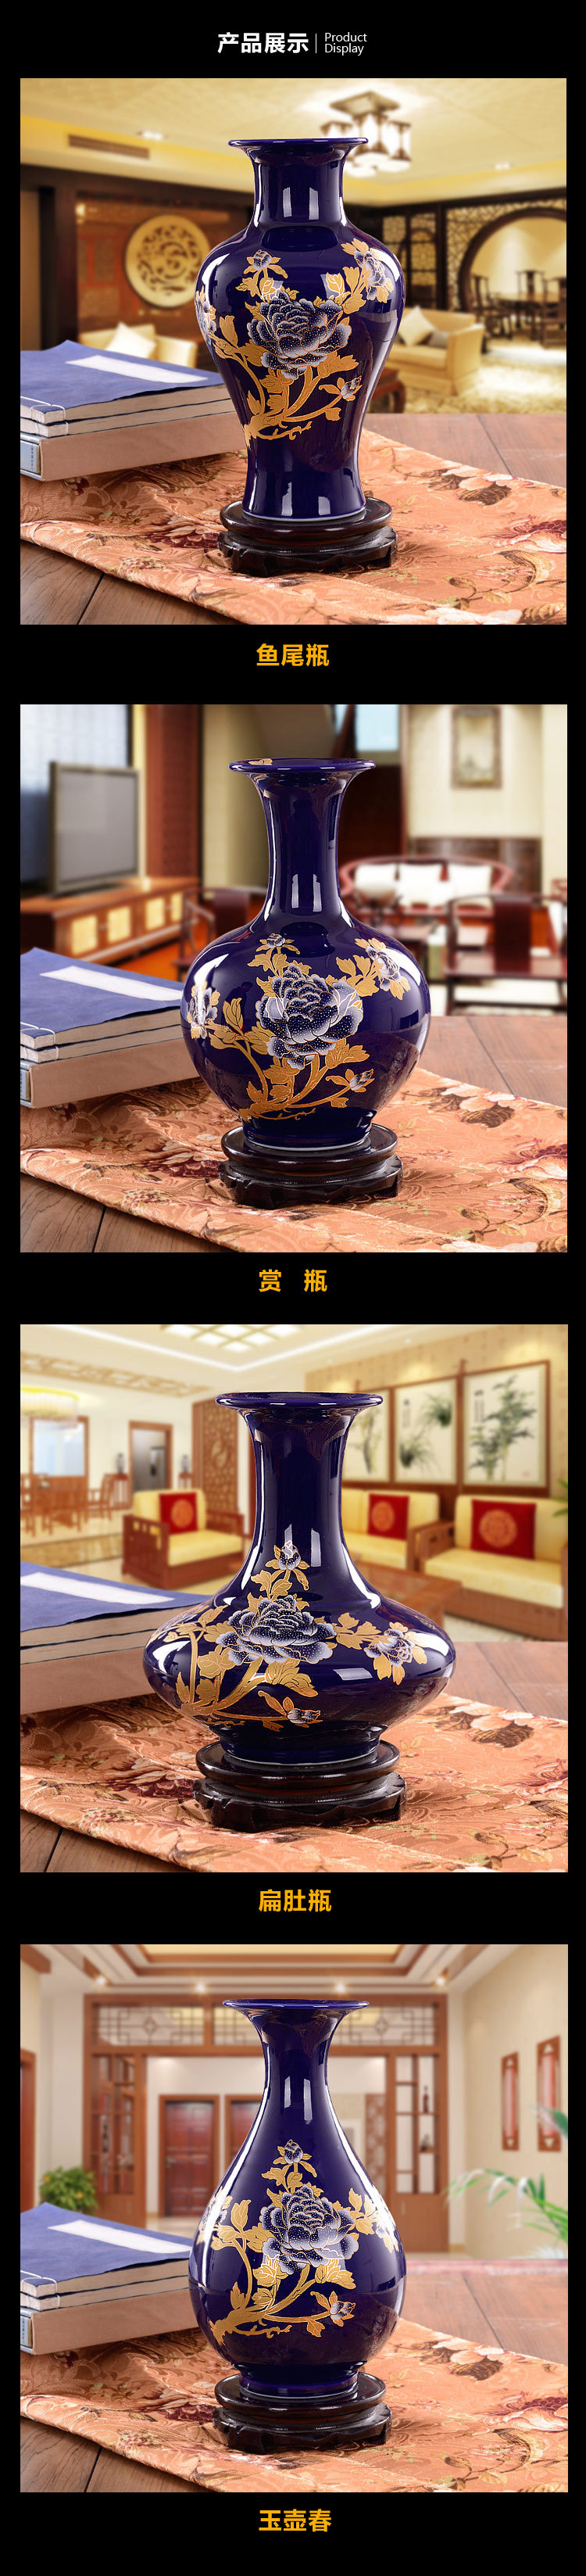 景德镇蓝金颜色釉花瓶产品展示